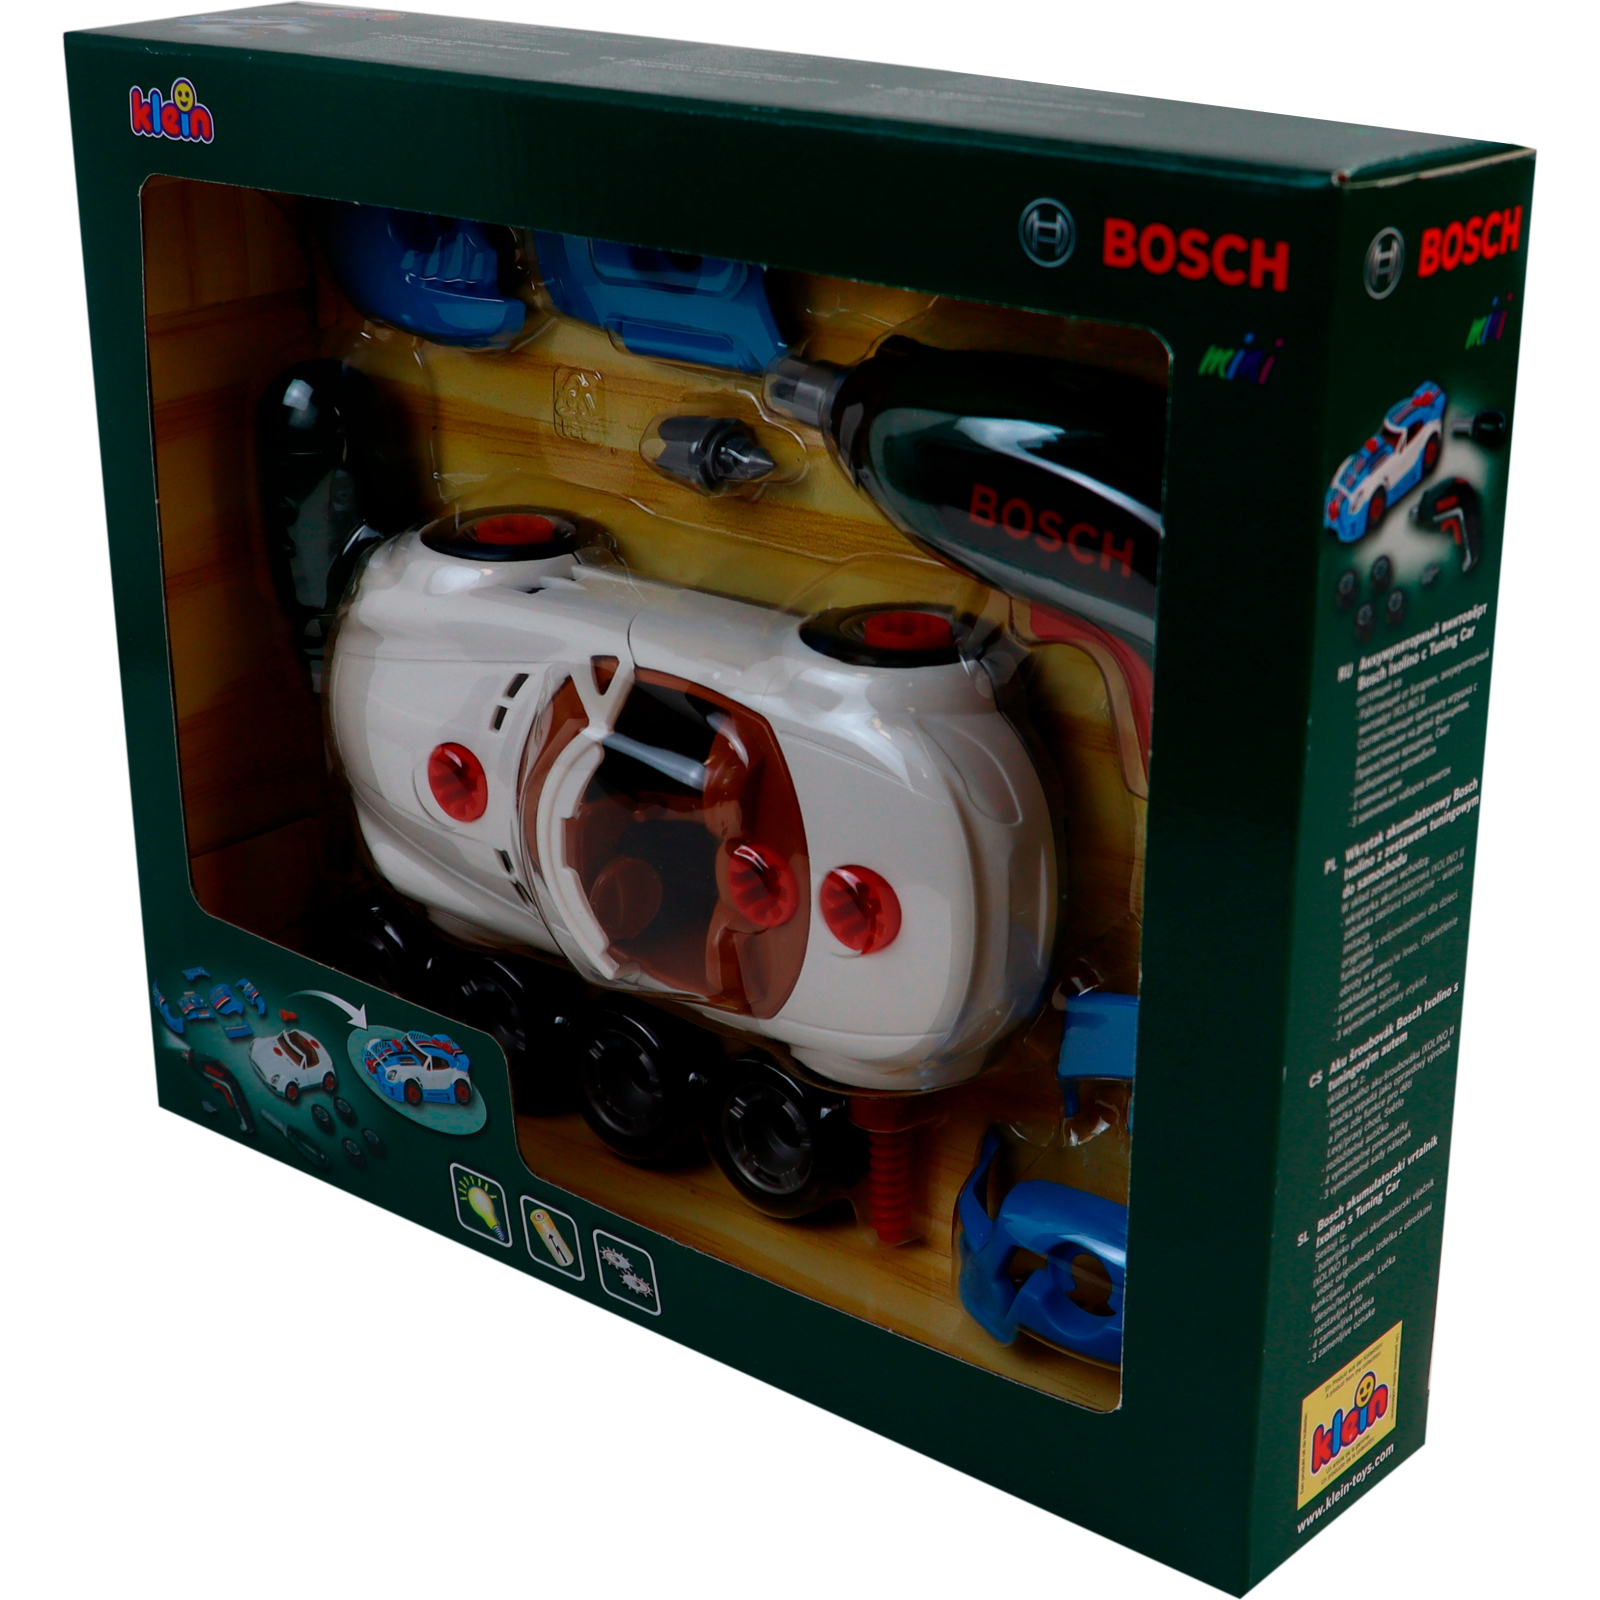 Ігровий набір Bosch для тюнінгу автомобіля, Ixolino II (8630) зображення 2